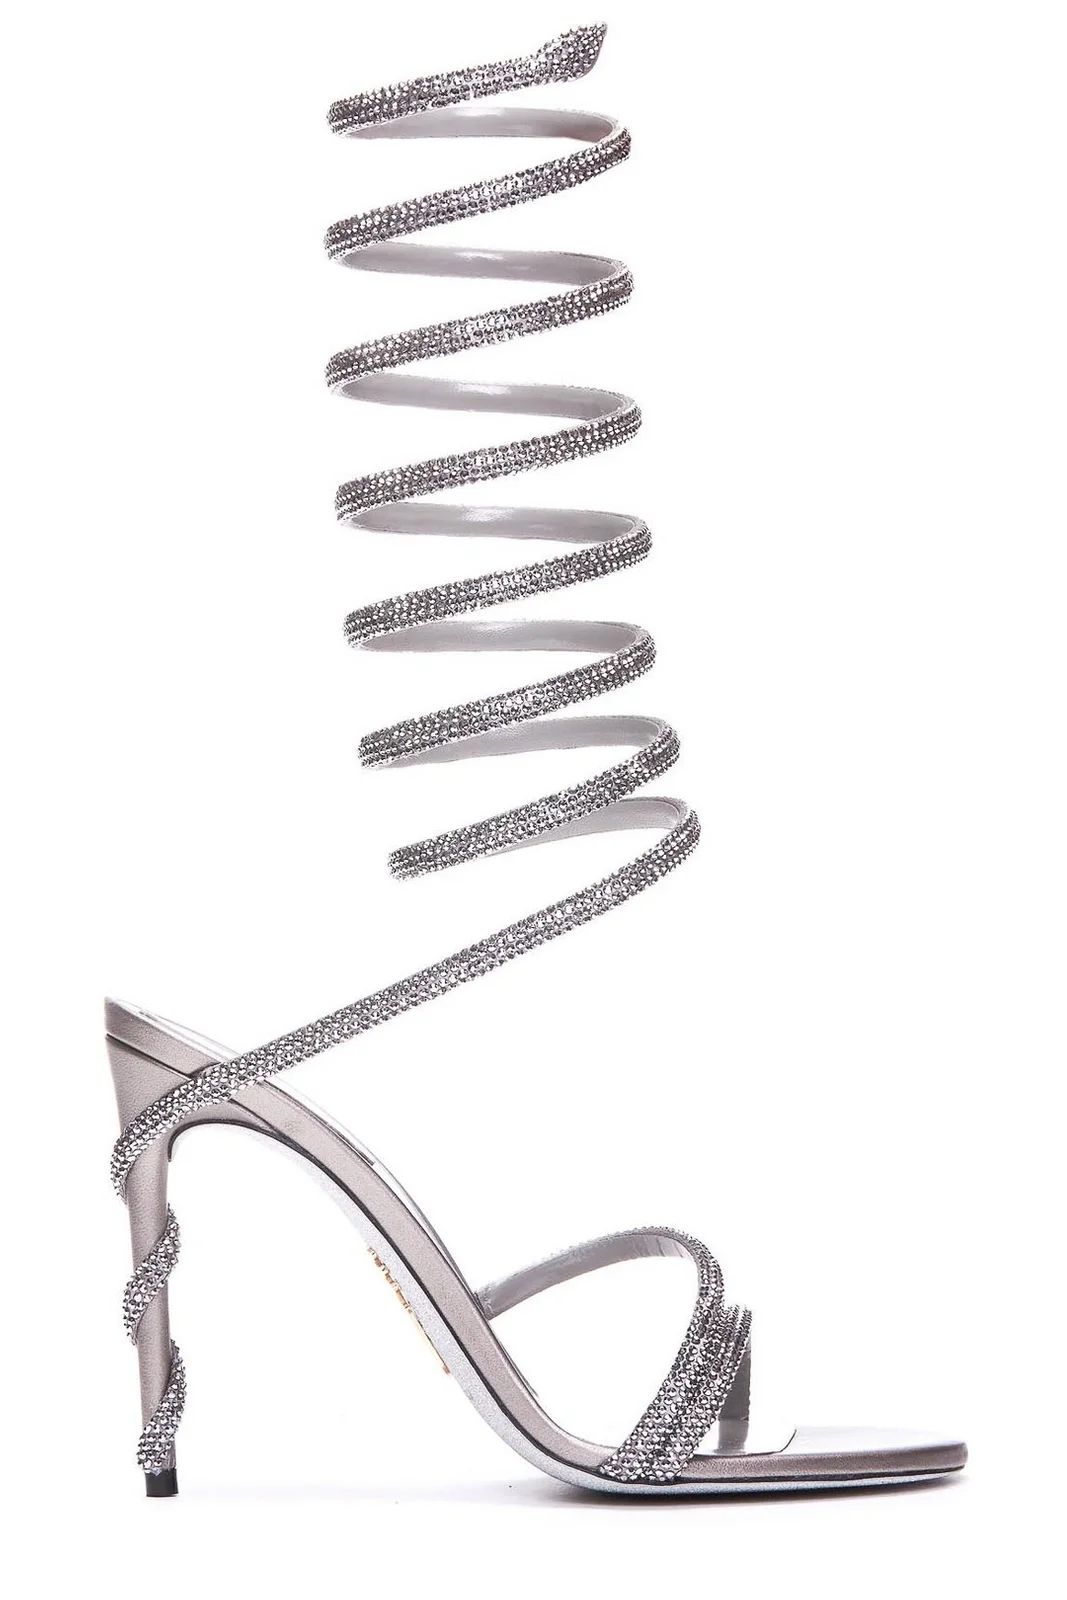 Rene Caovilla Margot Crystal Embellished Sandals | Cettire Global